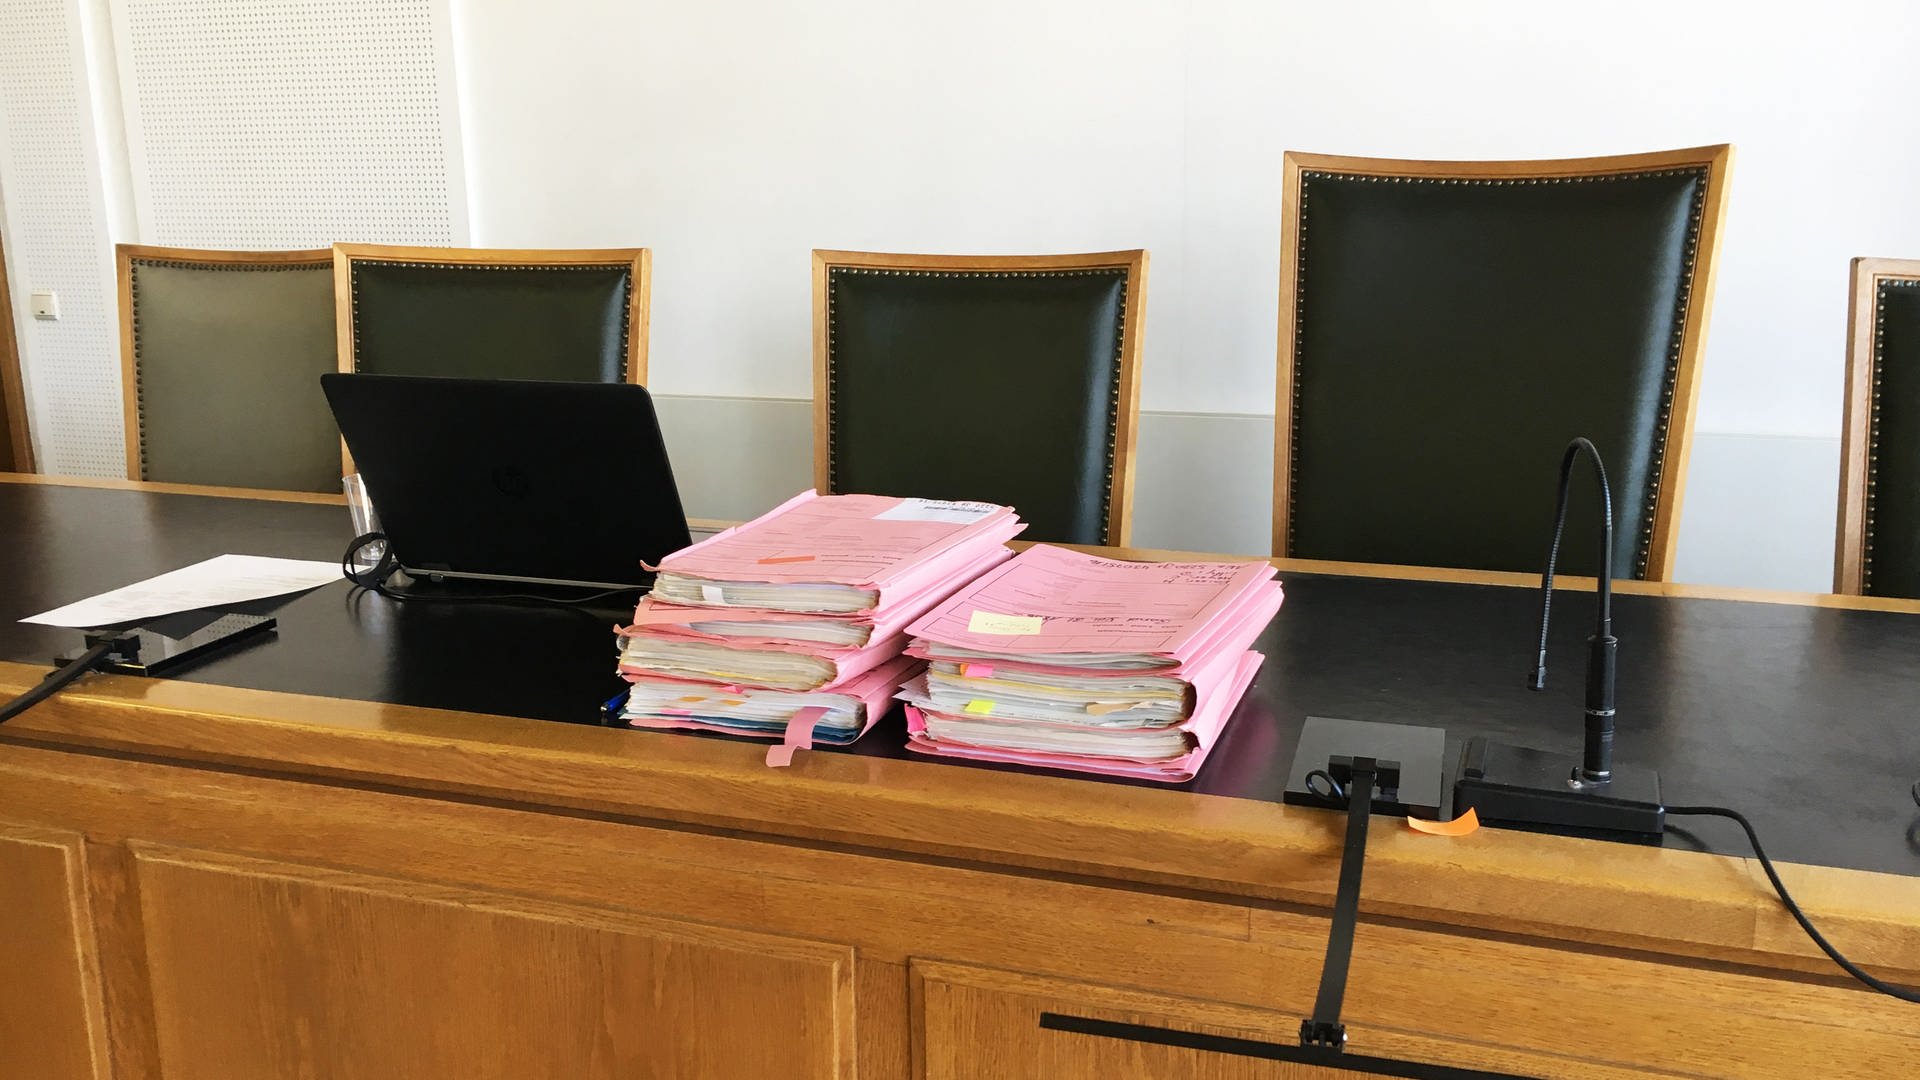 Angeklagter im Frankenthaler Mordprozess schweigt zu den Vorwürfen - SWR